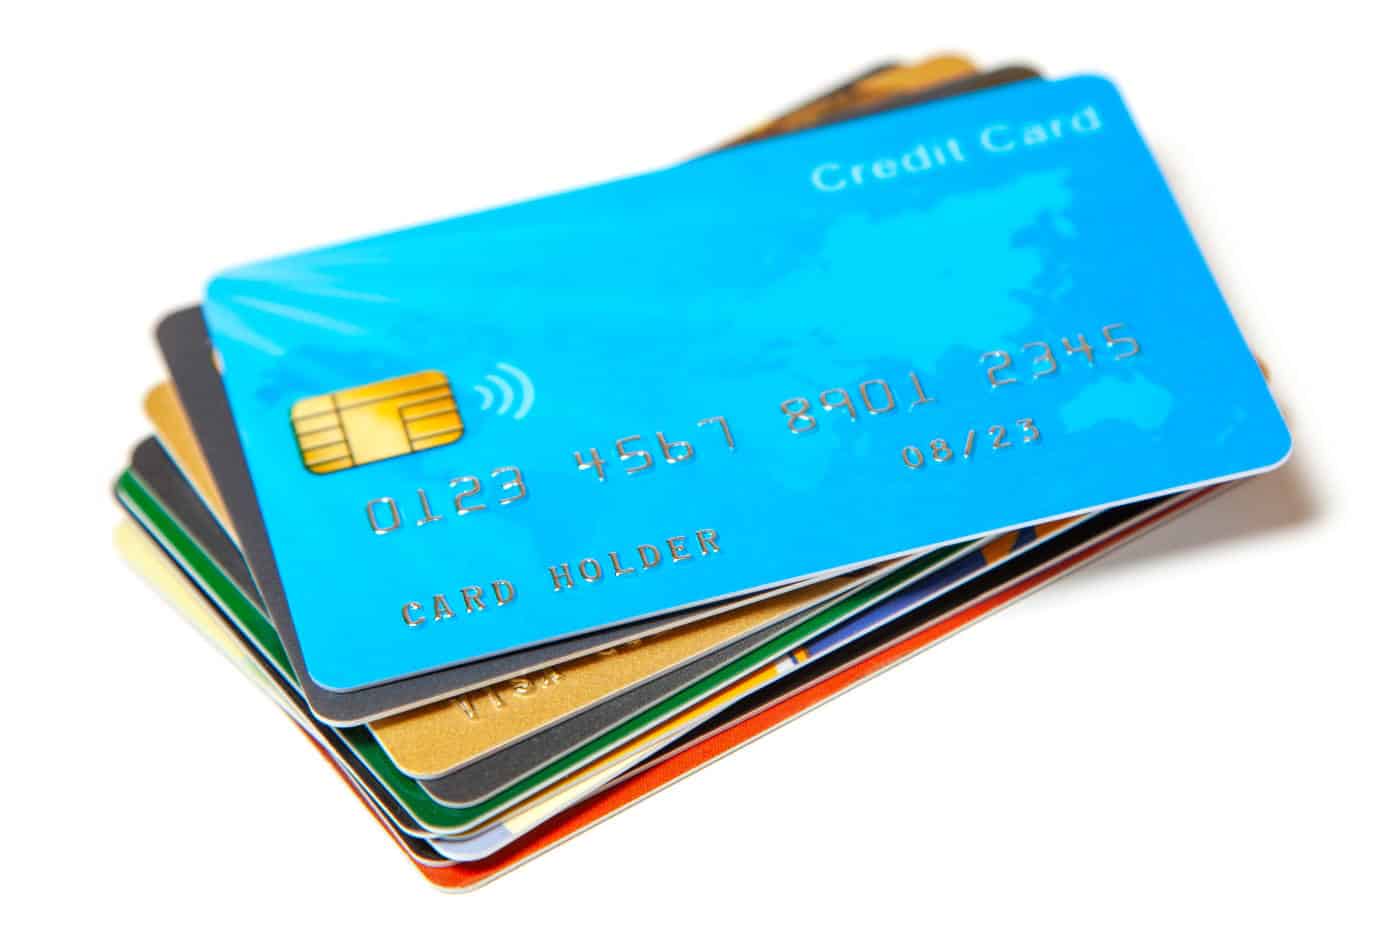 Imagem contendo vários cartões de crédito empilhados. O primeiro cartão da pilha é da cor azul